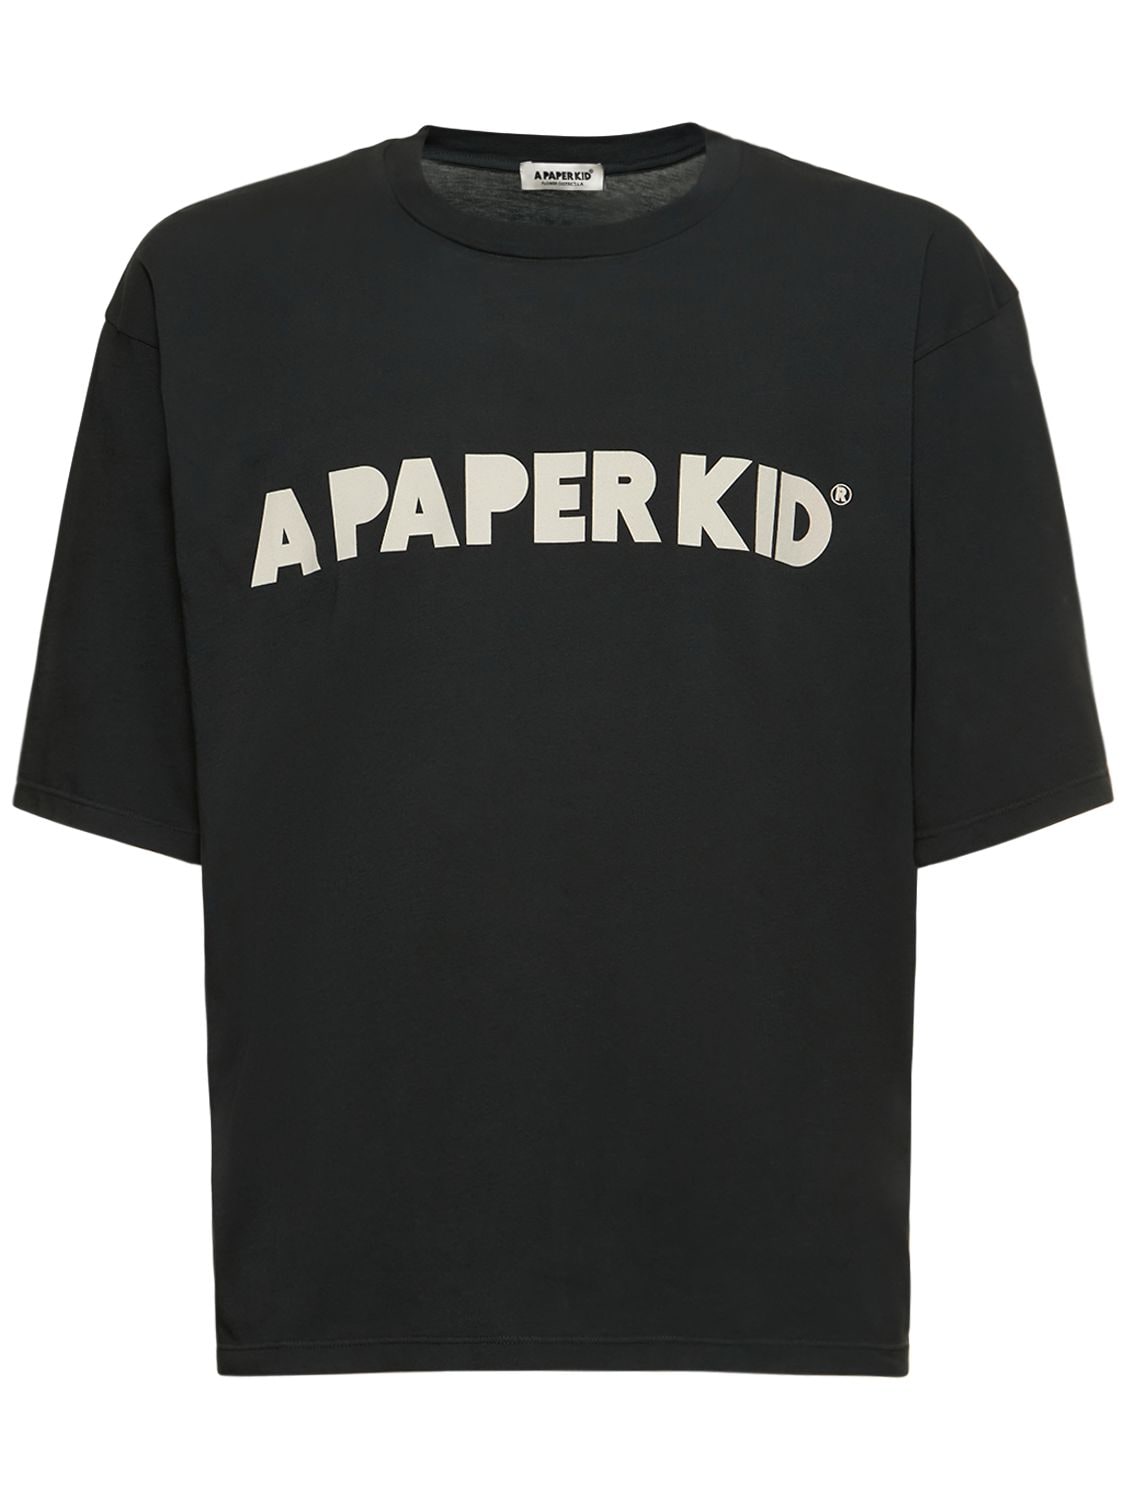 A Paper Kid 男女通用t恤 In Black